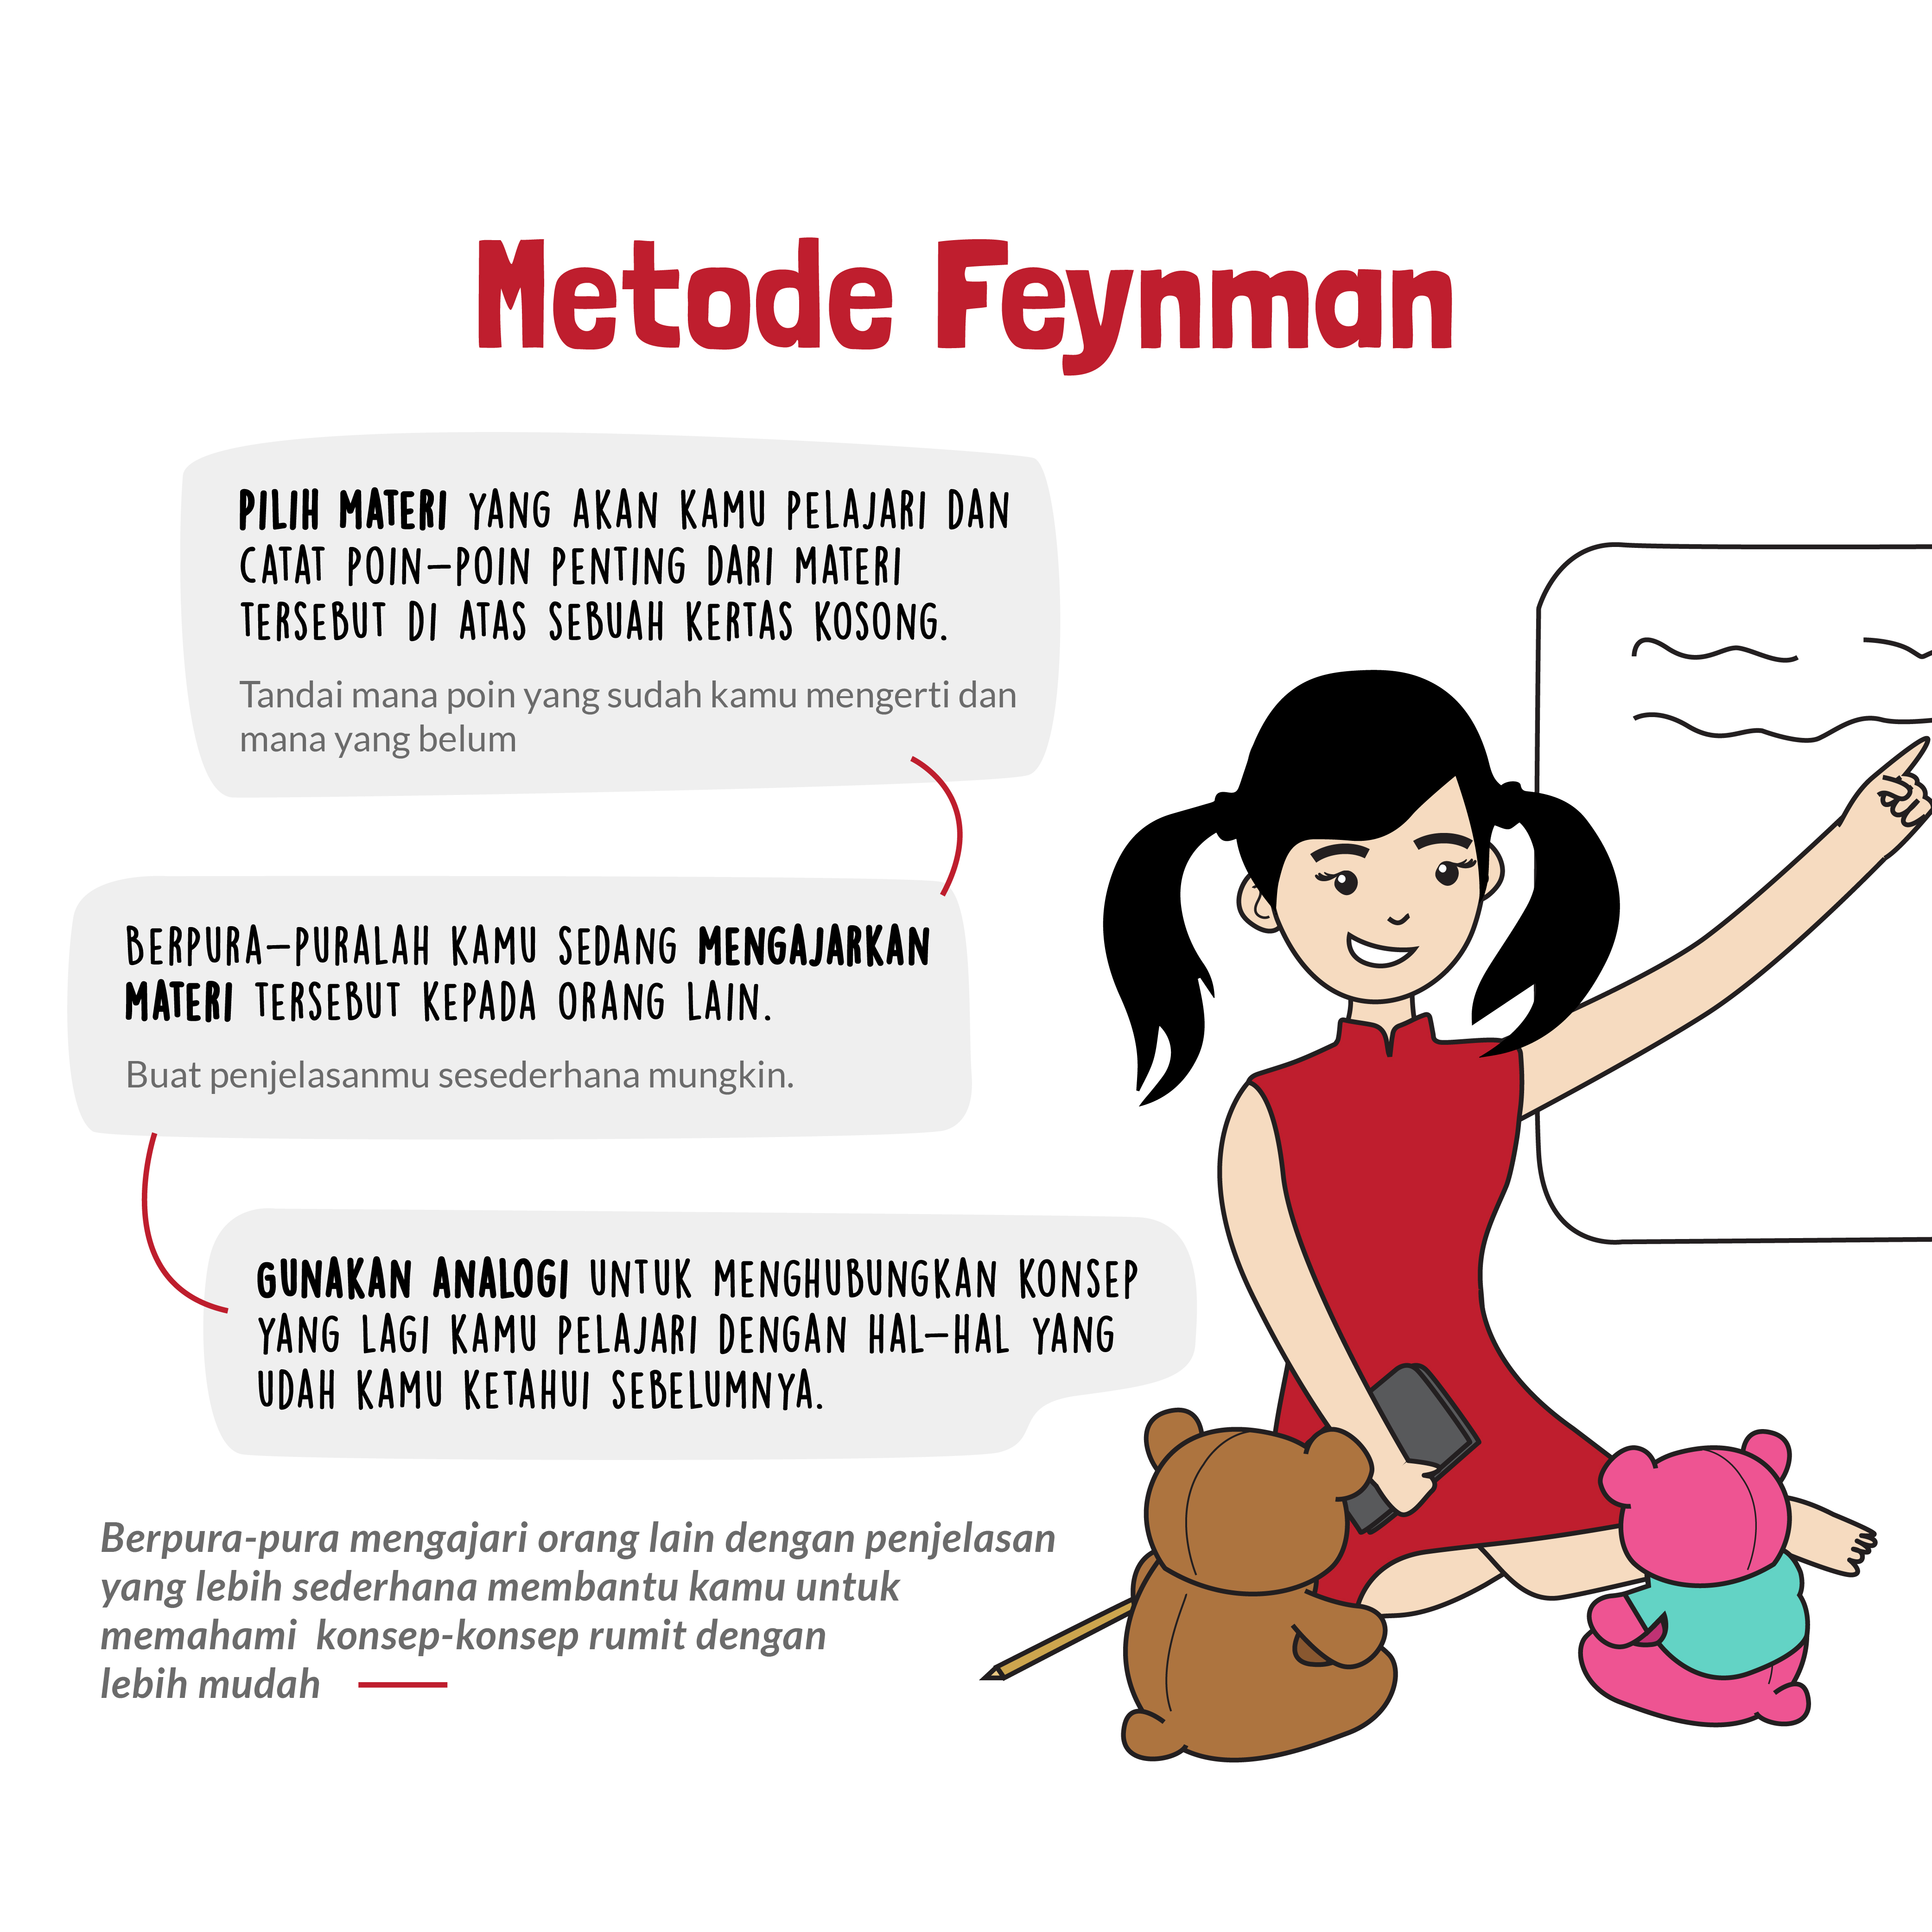 feynman method metode